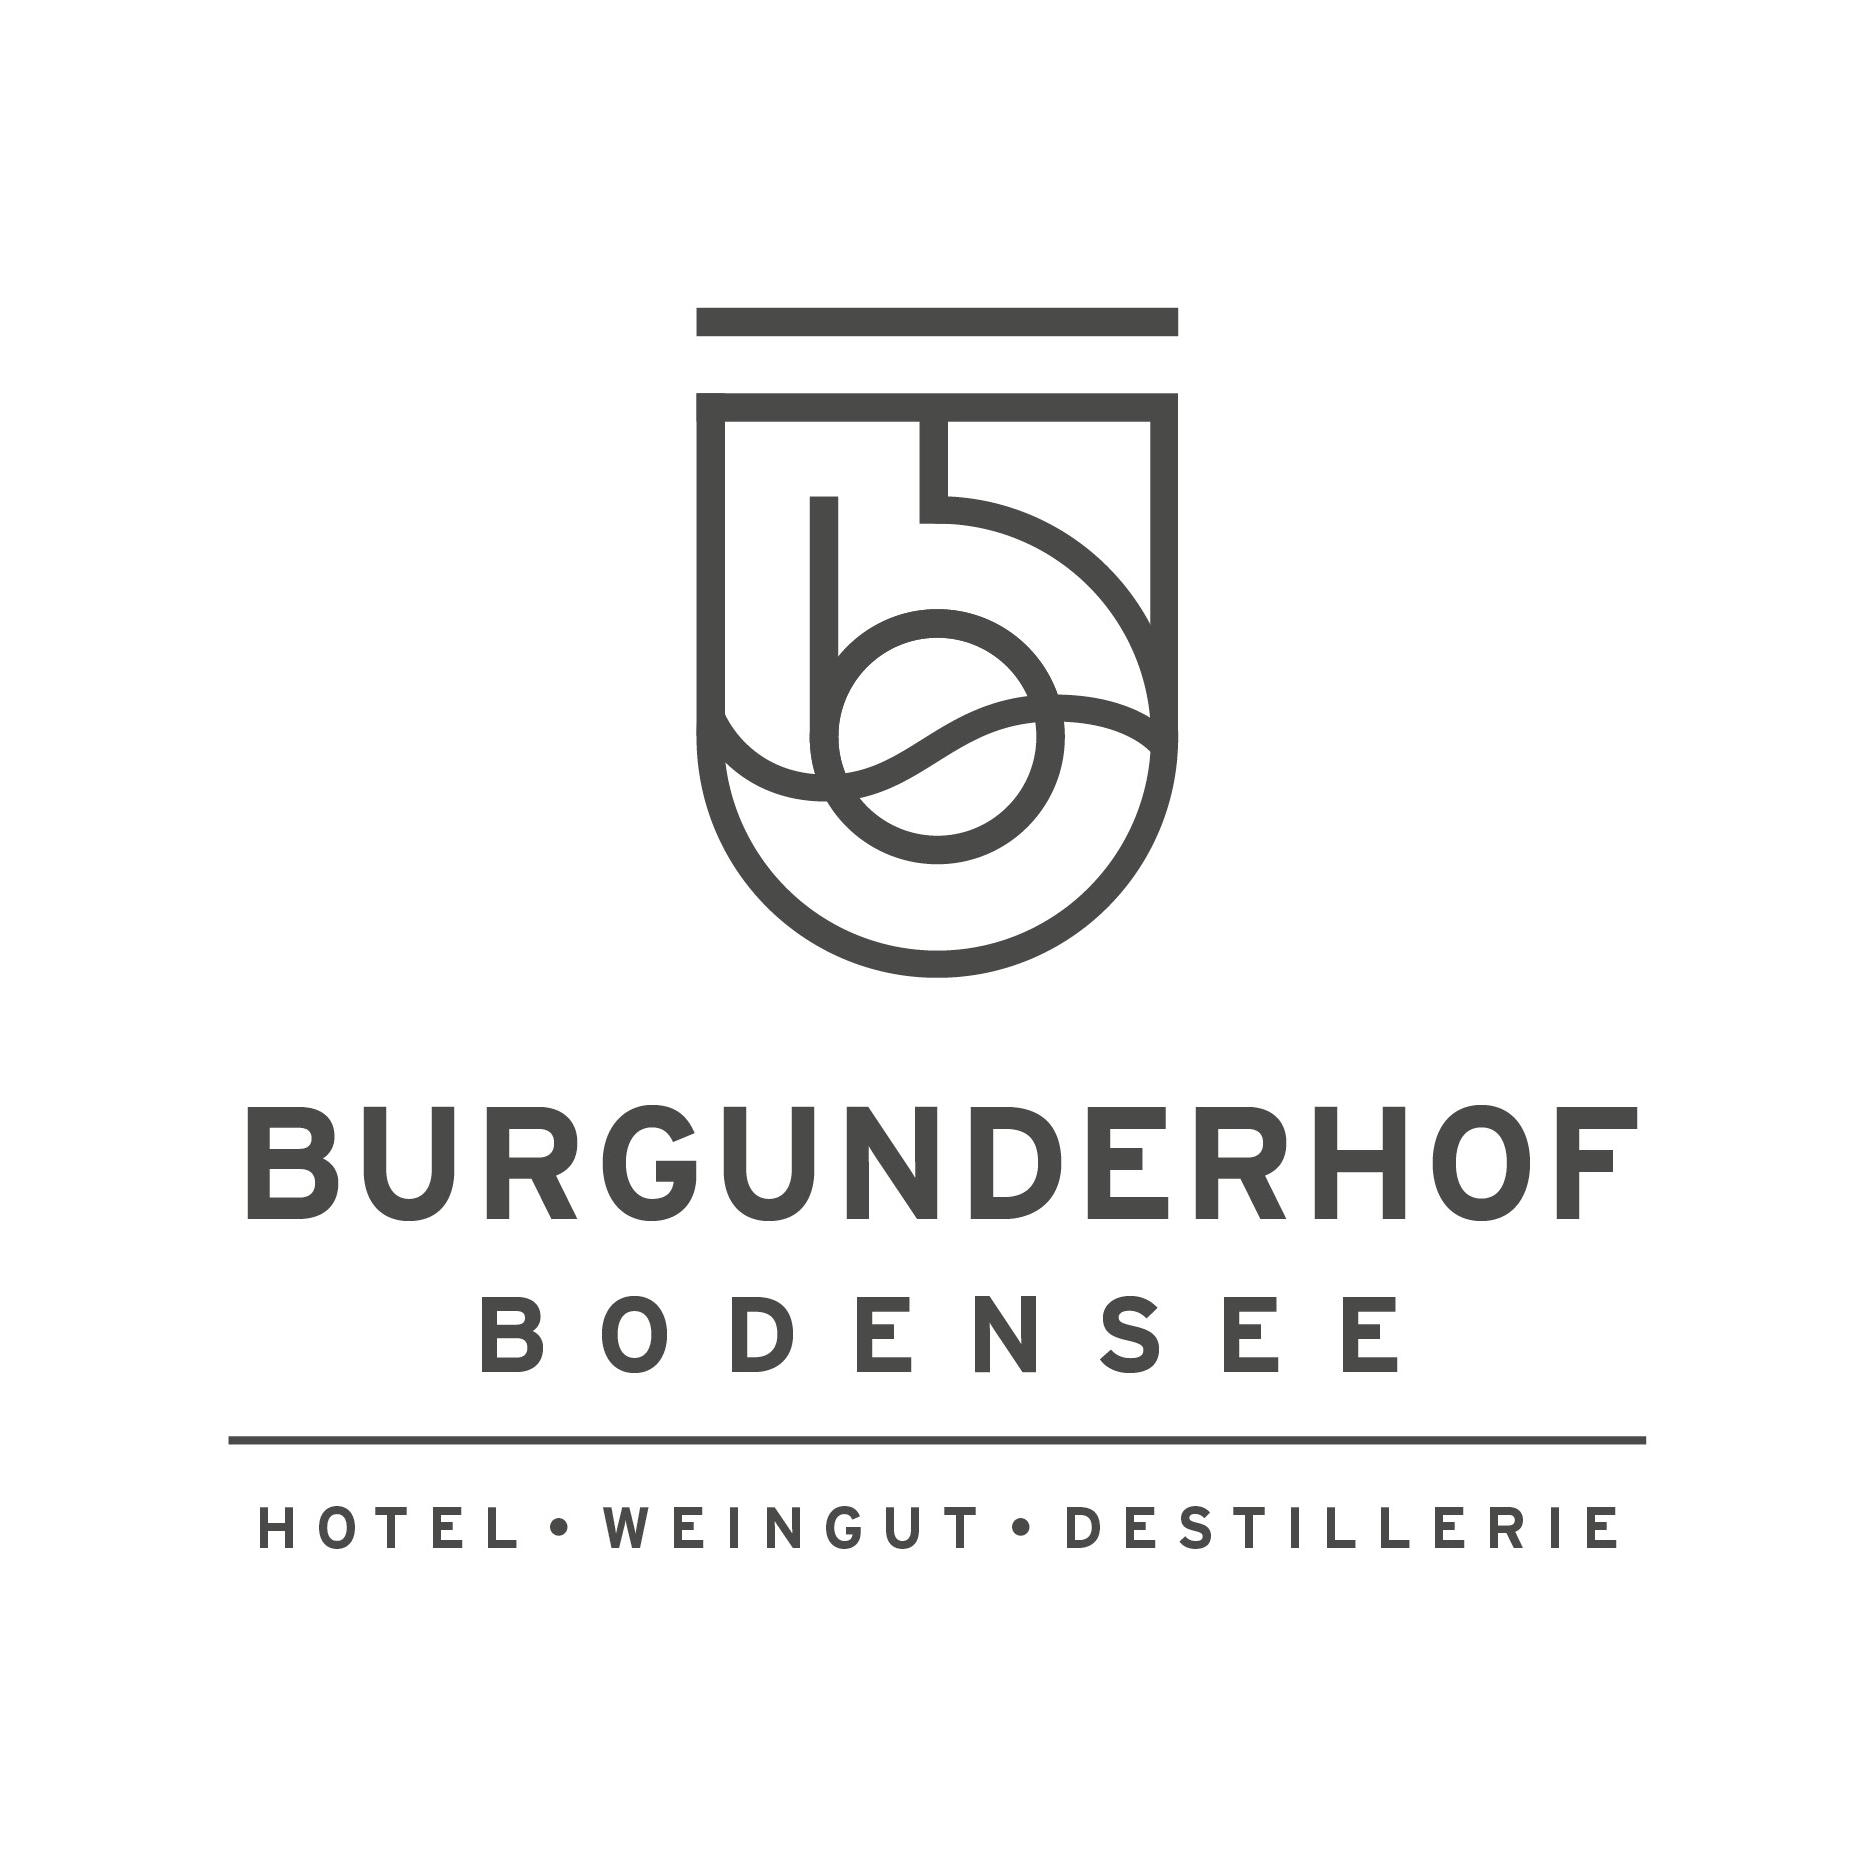 Burgunderhof - Hotel, Weingut, Distillerie